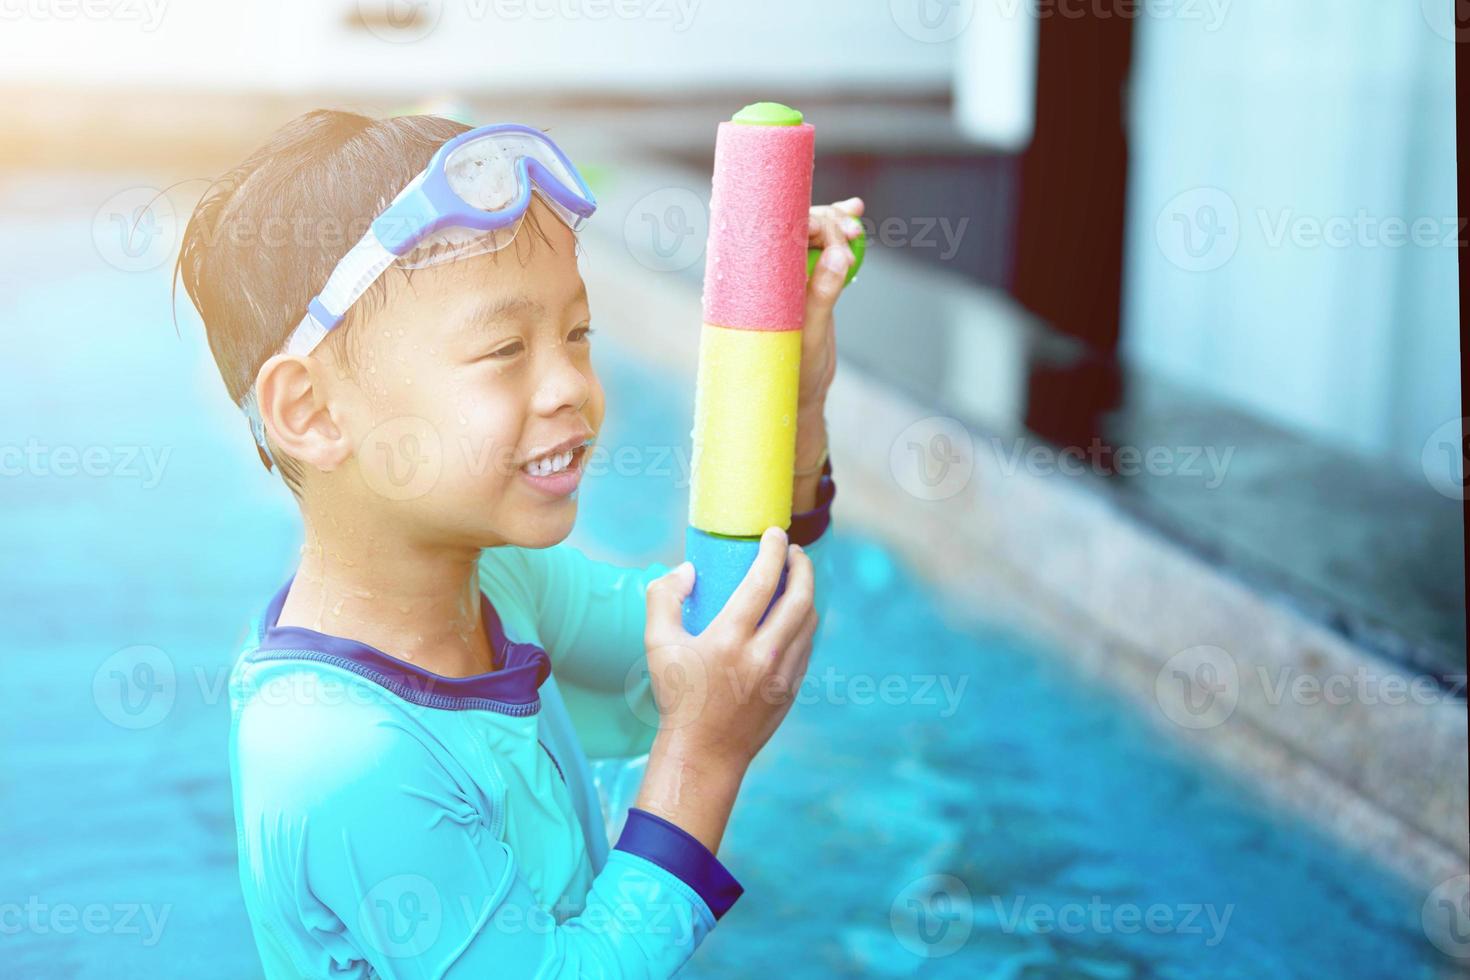 jongen speelt waterpistool met bril in hotelvakantieconcept foto